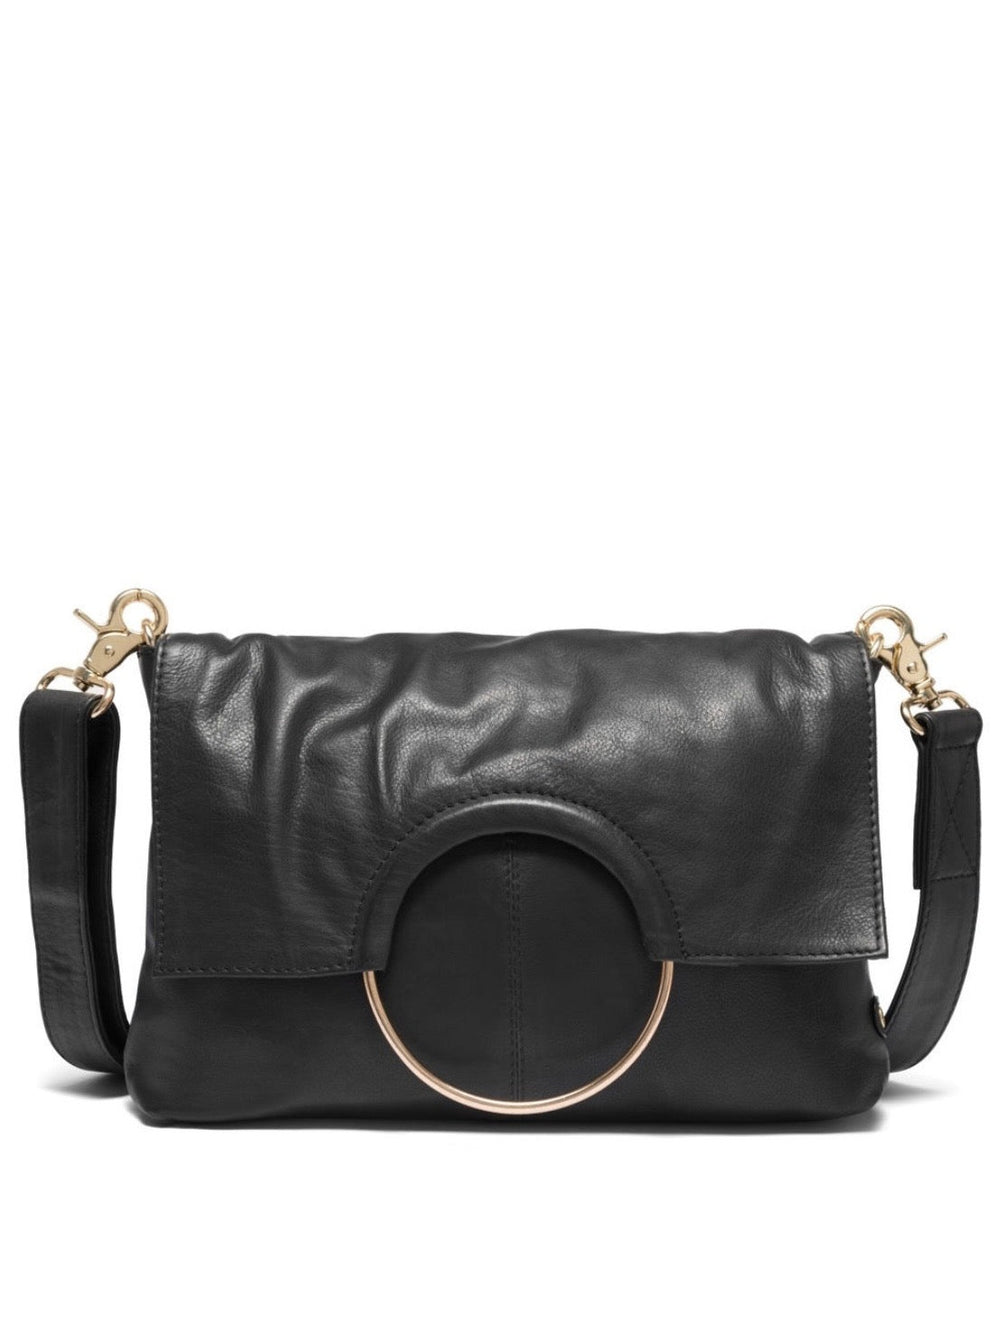 Small Bag / Clutch Black (Nero), DEPECHE